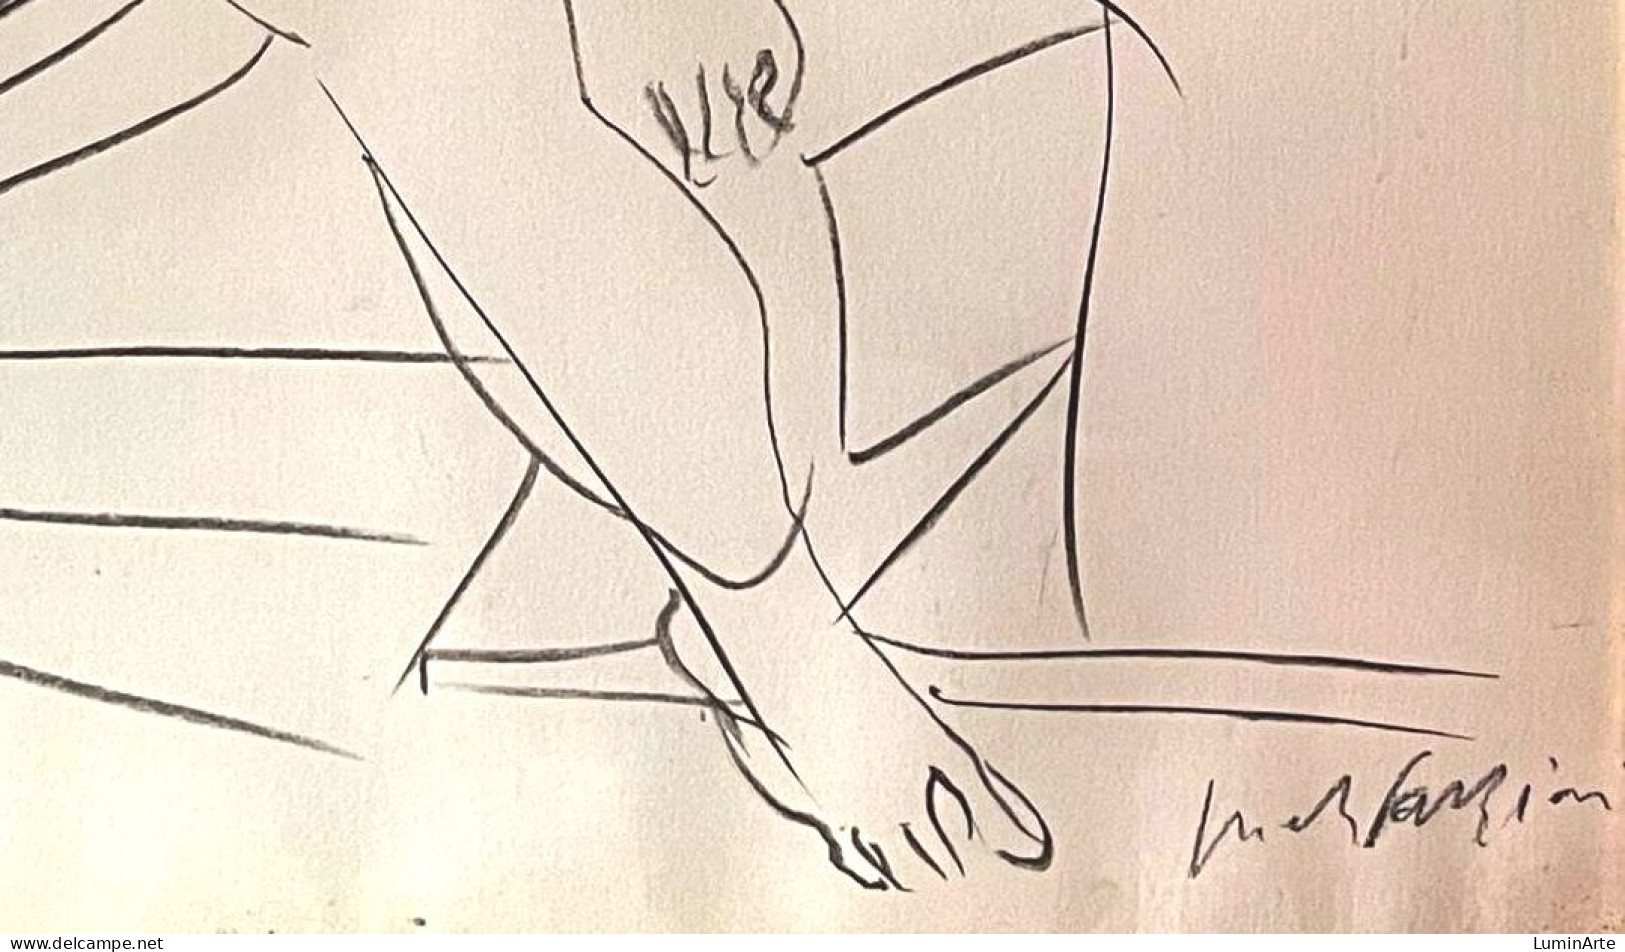 Pericle Fazzini (1913-1987) "Nude" - Drawings